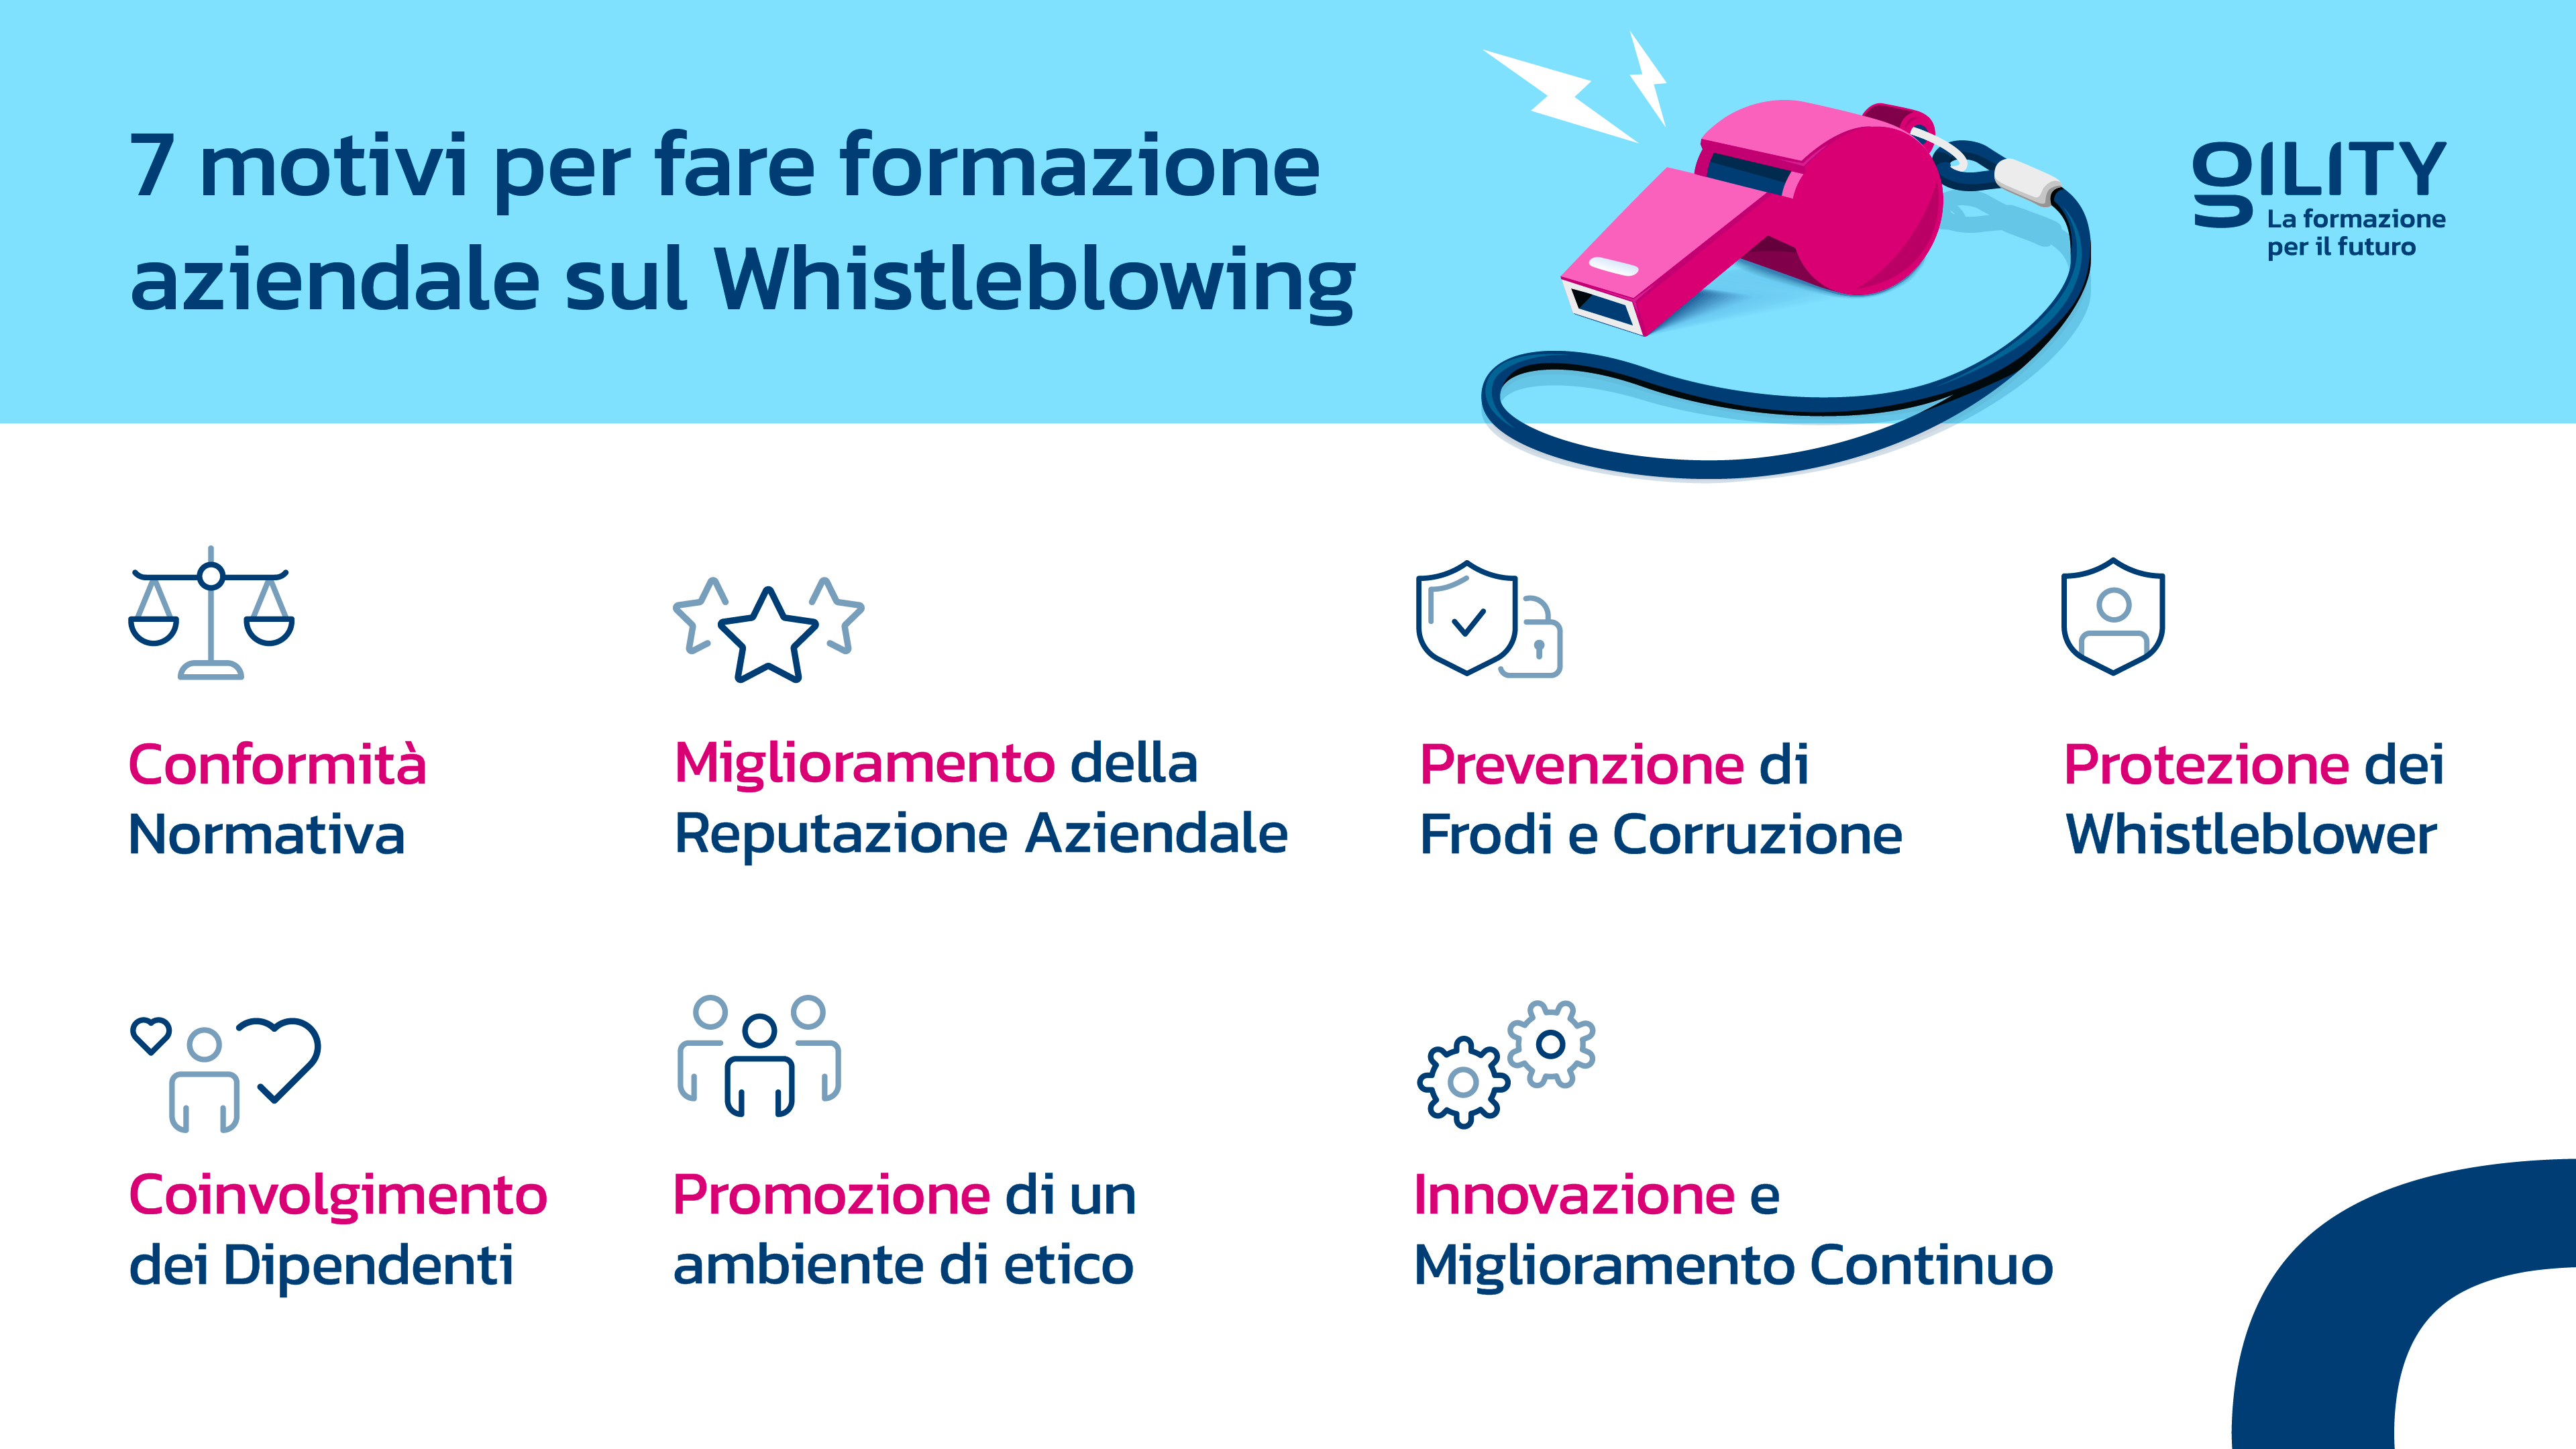 Infografica di Gility che elenca 7 benefici della formazione sul whistleblowing per le aziende.